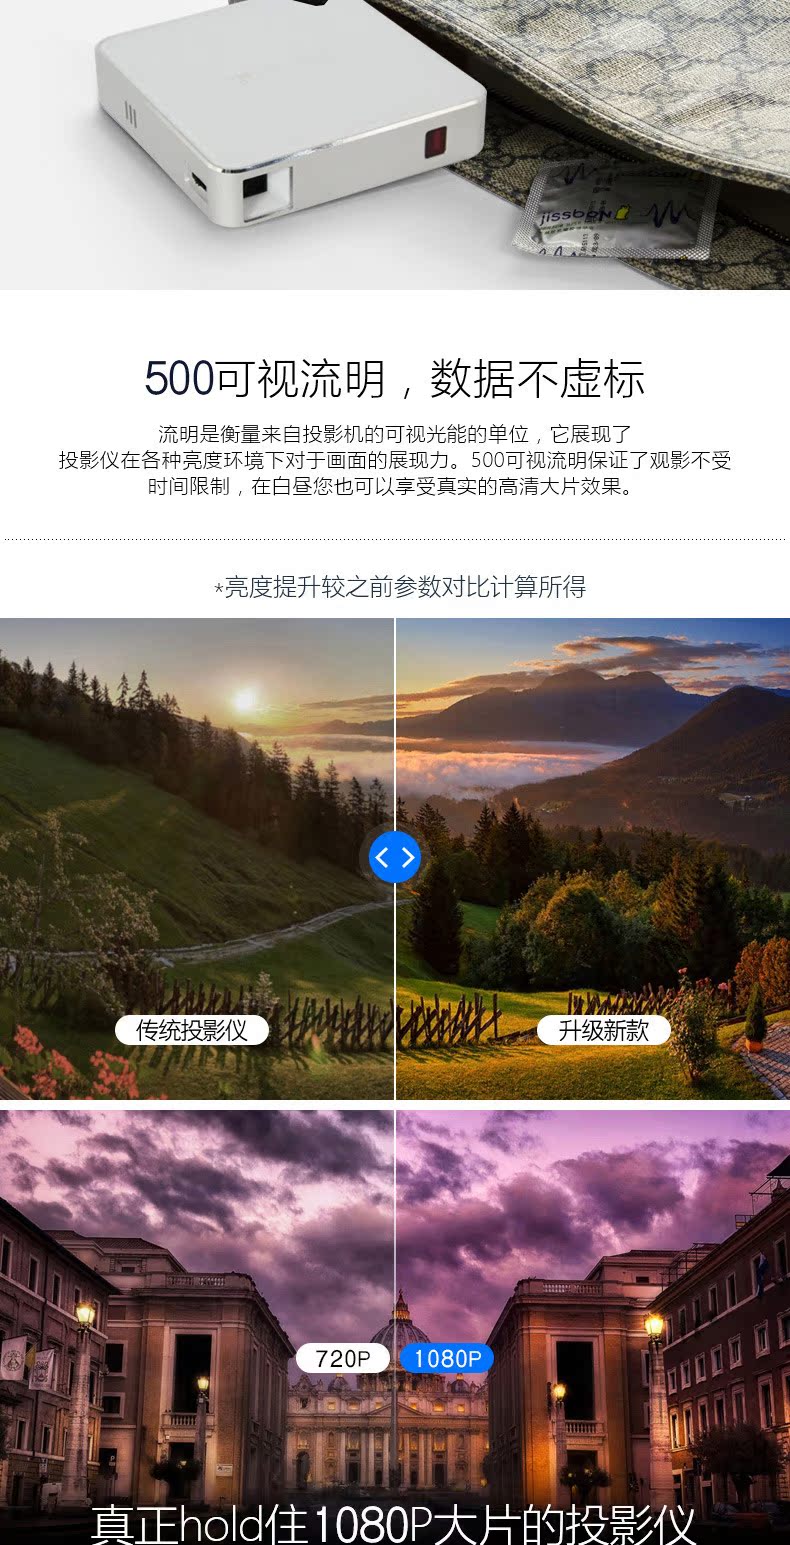 Xiaoshuai IBOXmini máy chiếu không có màn hình TV điện thoại di động chiếu Android Máy chiếu Apple wifi quà tặng lãng mạn